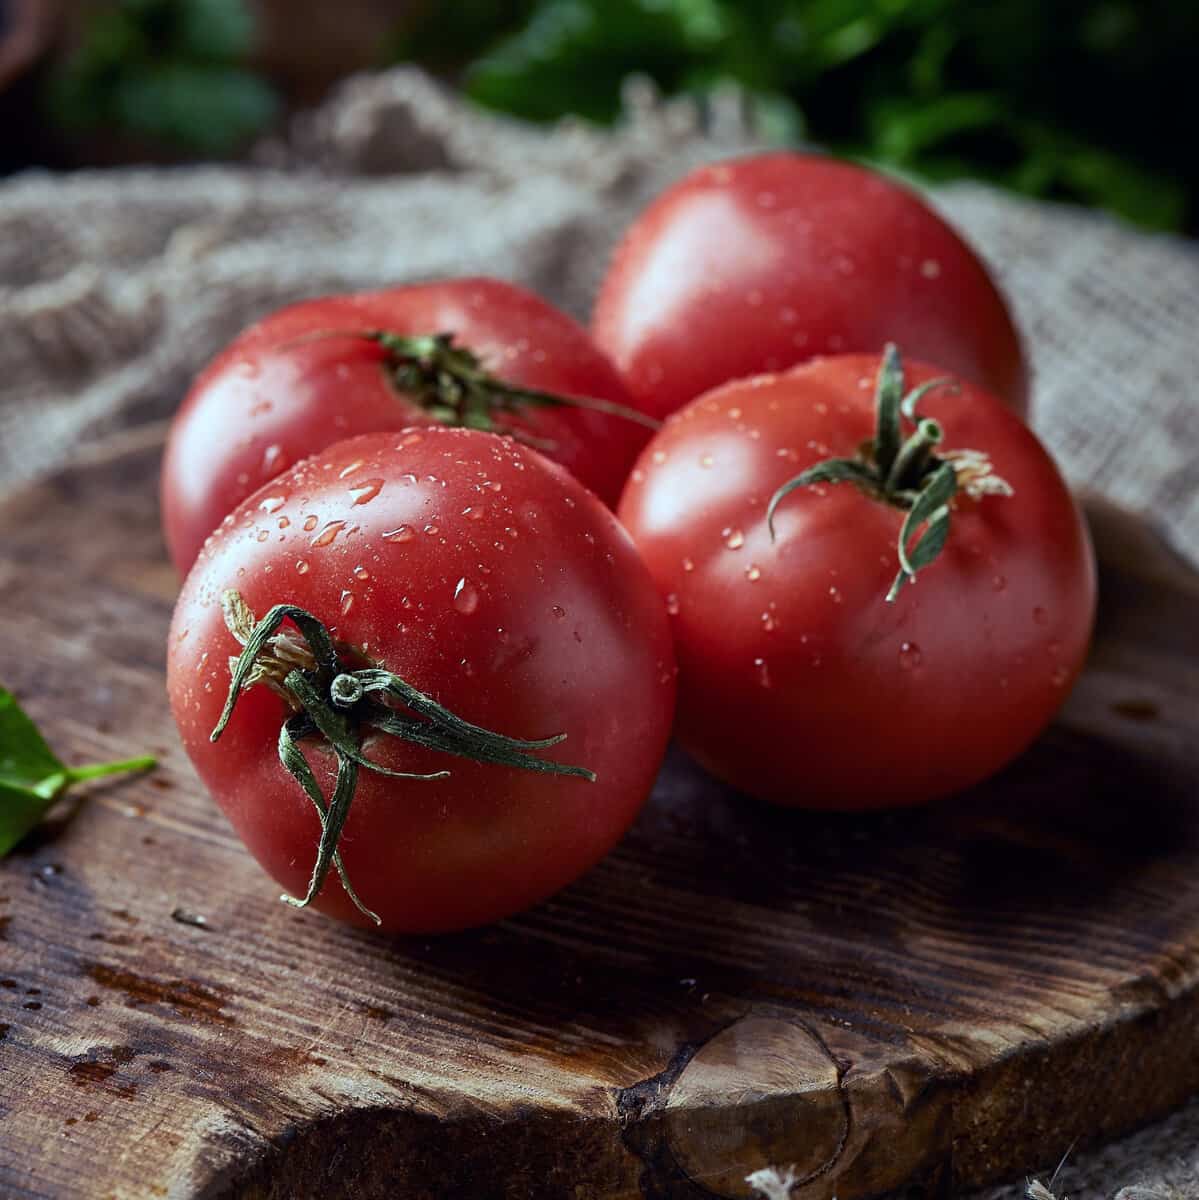 فروش کلی گوجه فرنگی درشت بسته بندی با قیمت اقتصادی